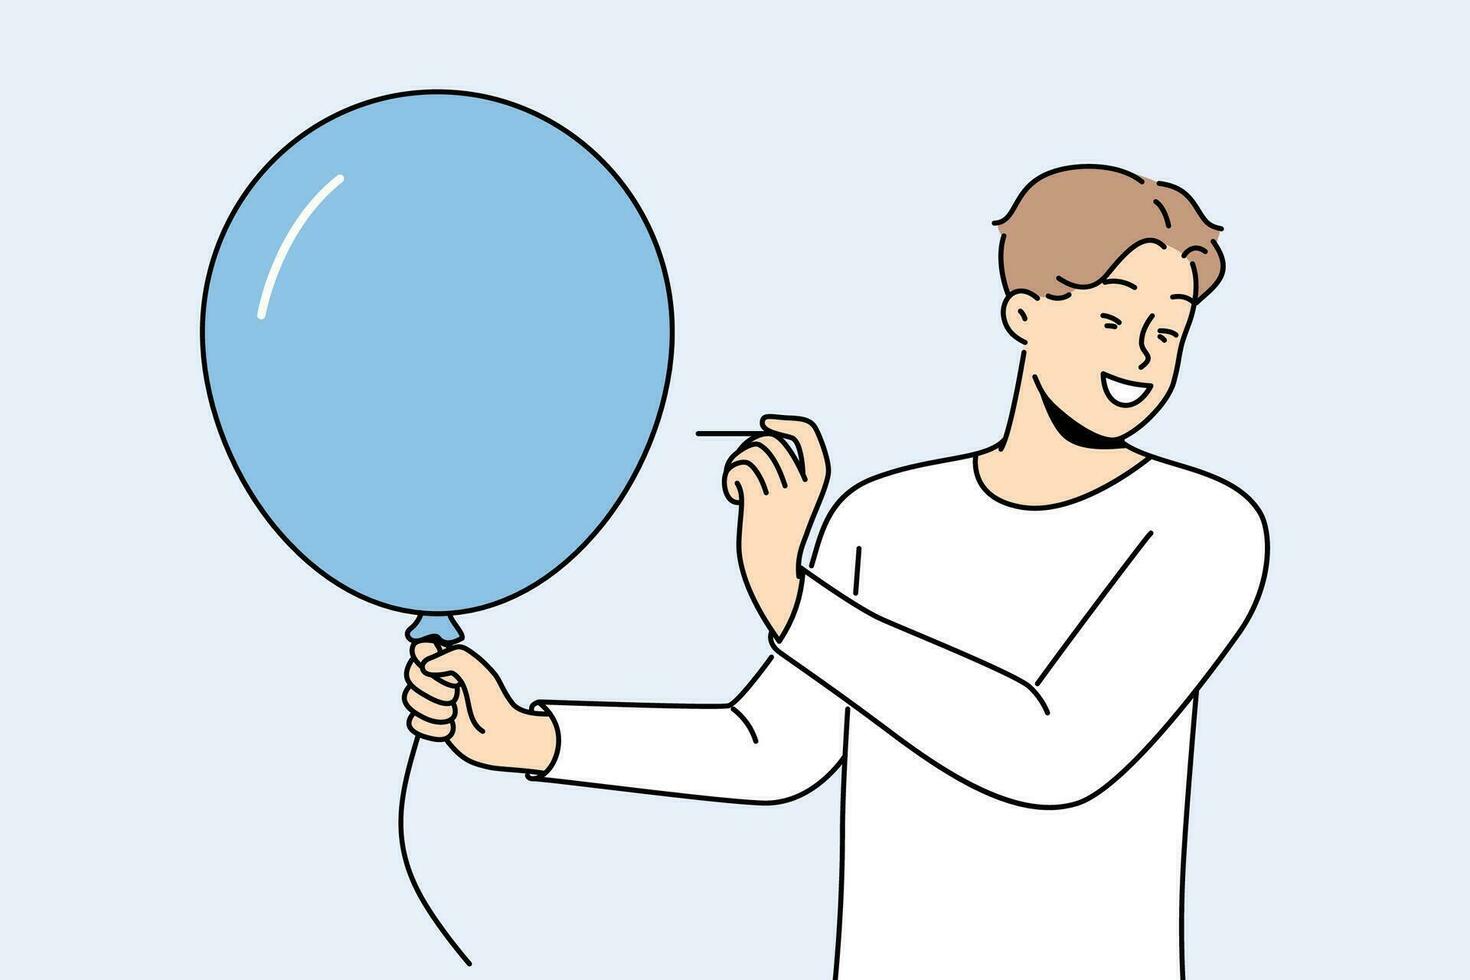 Mann mit Ballon hält Nadel, wollen zu machen laut Explosion zu jubeln Menschen um. glücklich Kerl gekleidet im beiläufig Stil mit Blau Ballon im Hände macht Streich zu Schrecken oder amüsieren Freunde. vektor